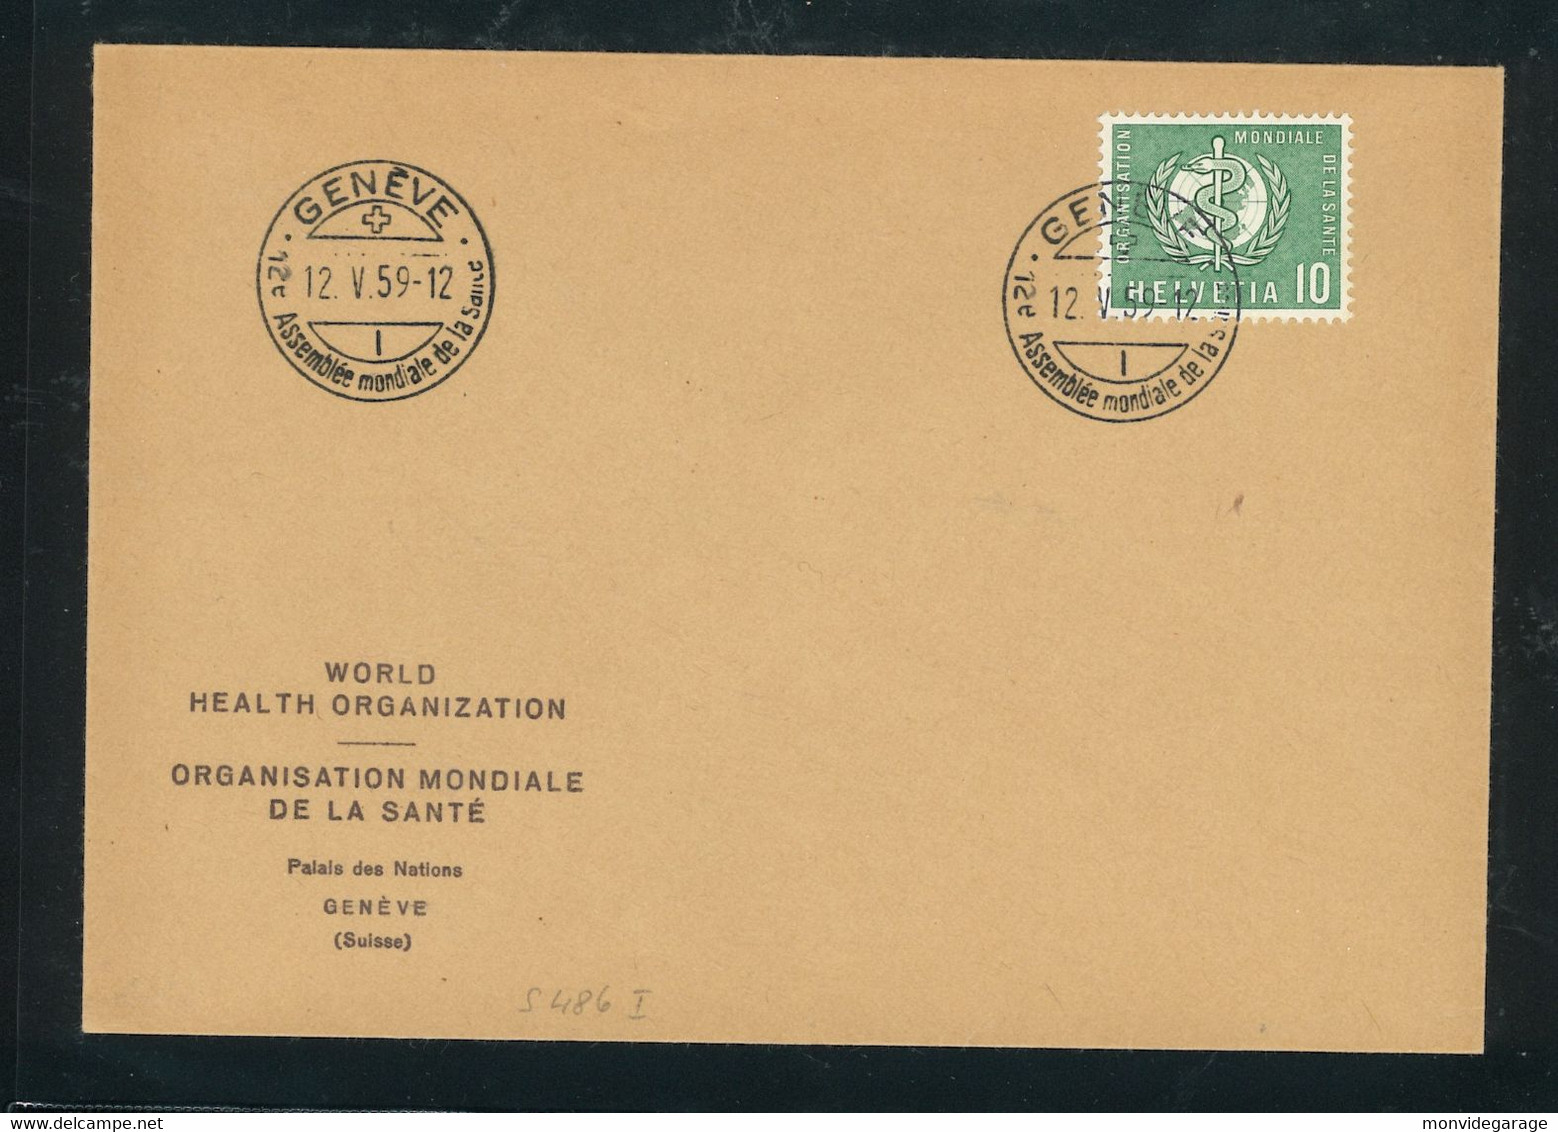 Assemblée Mondiale De La Santé  - 12 05 1959 - Premier Jour - Genève - OMS - 29/1 - OMS